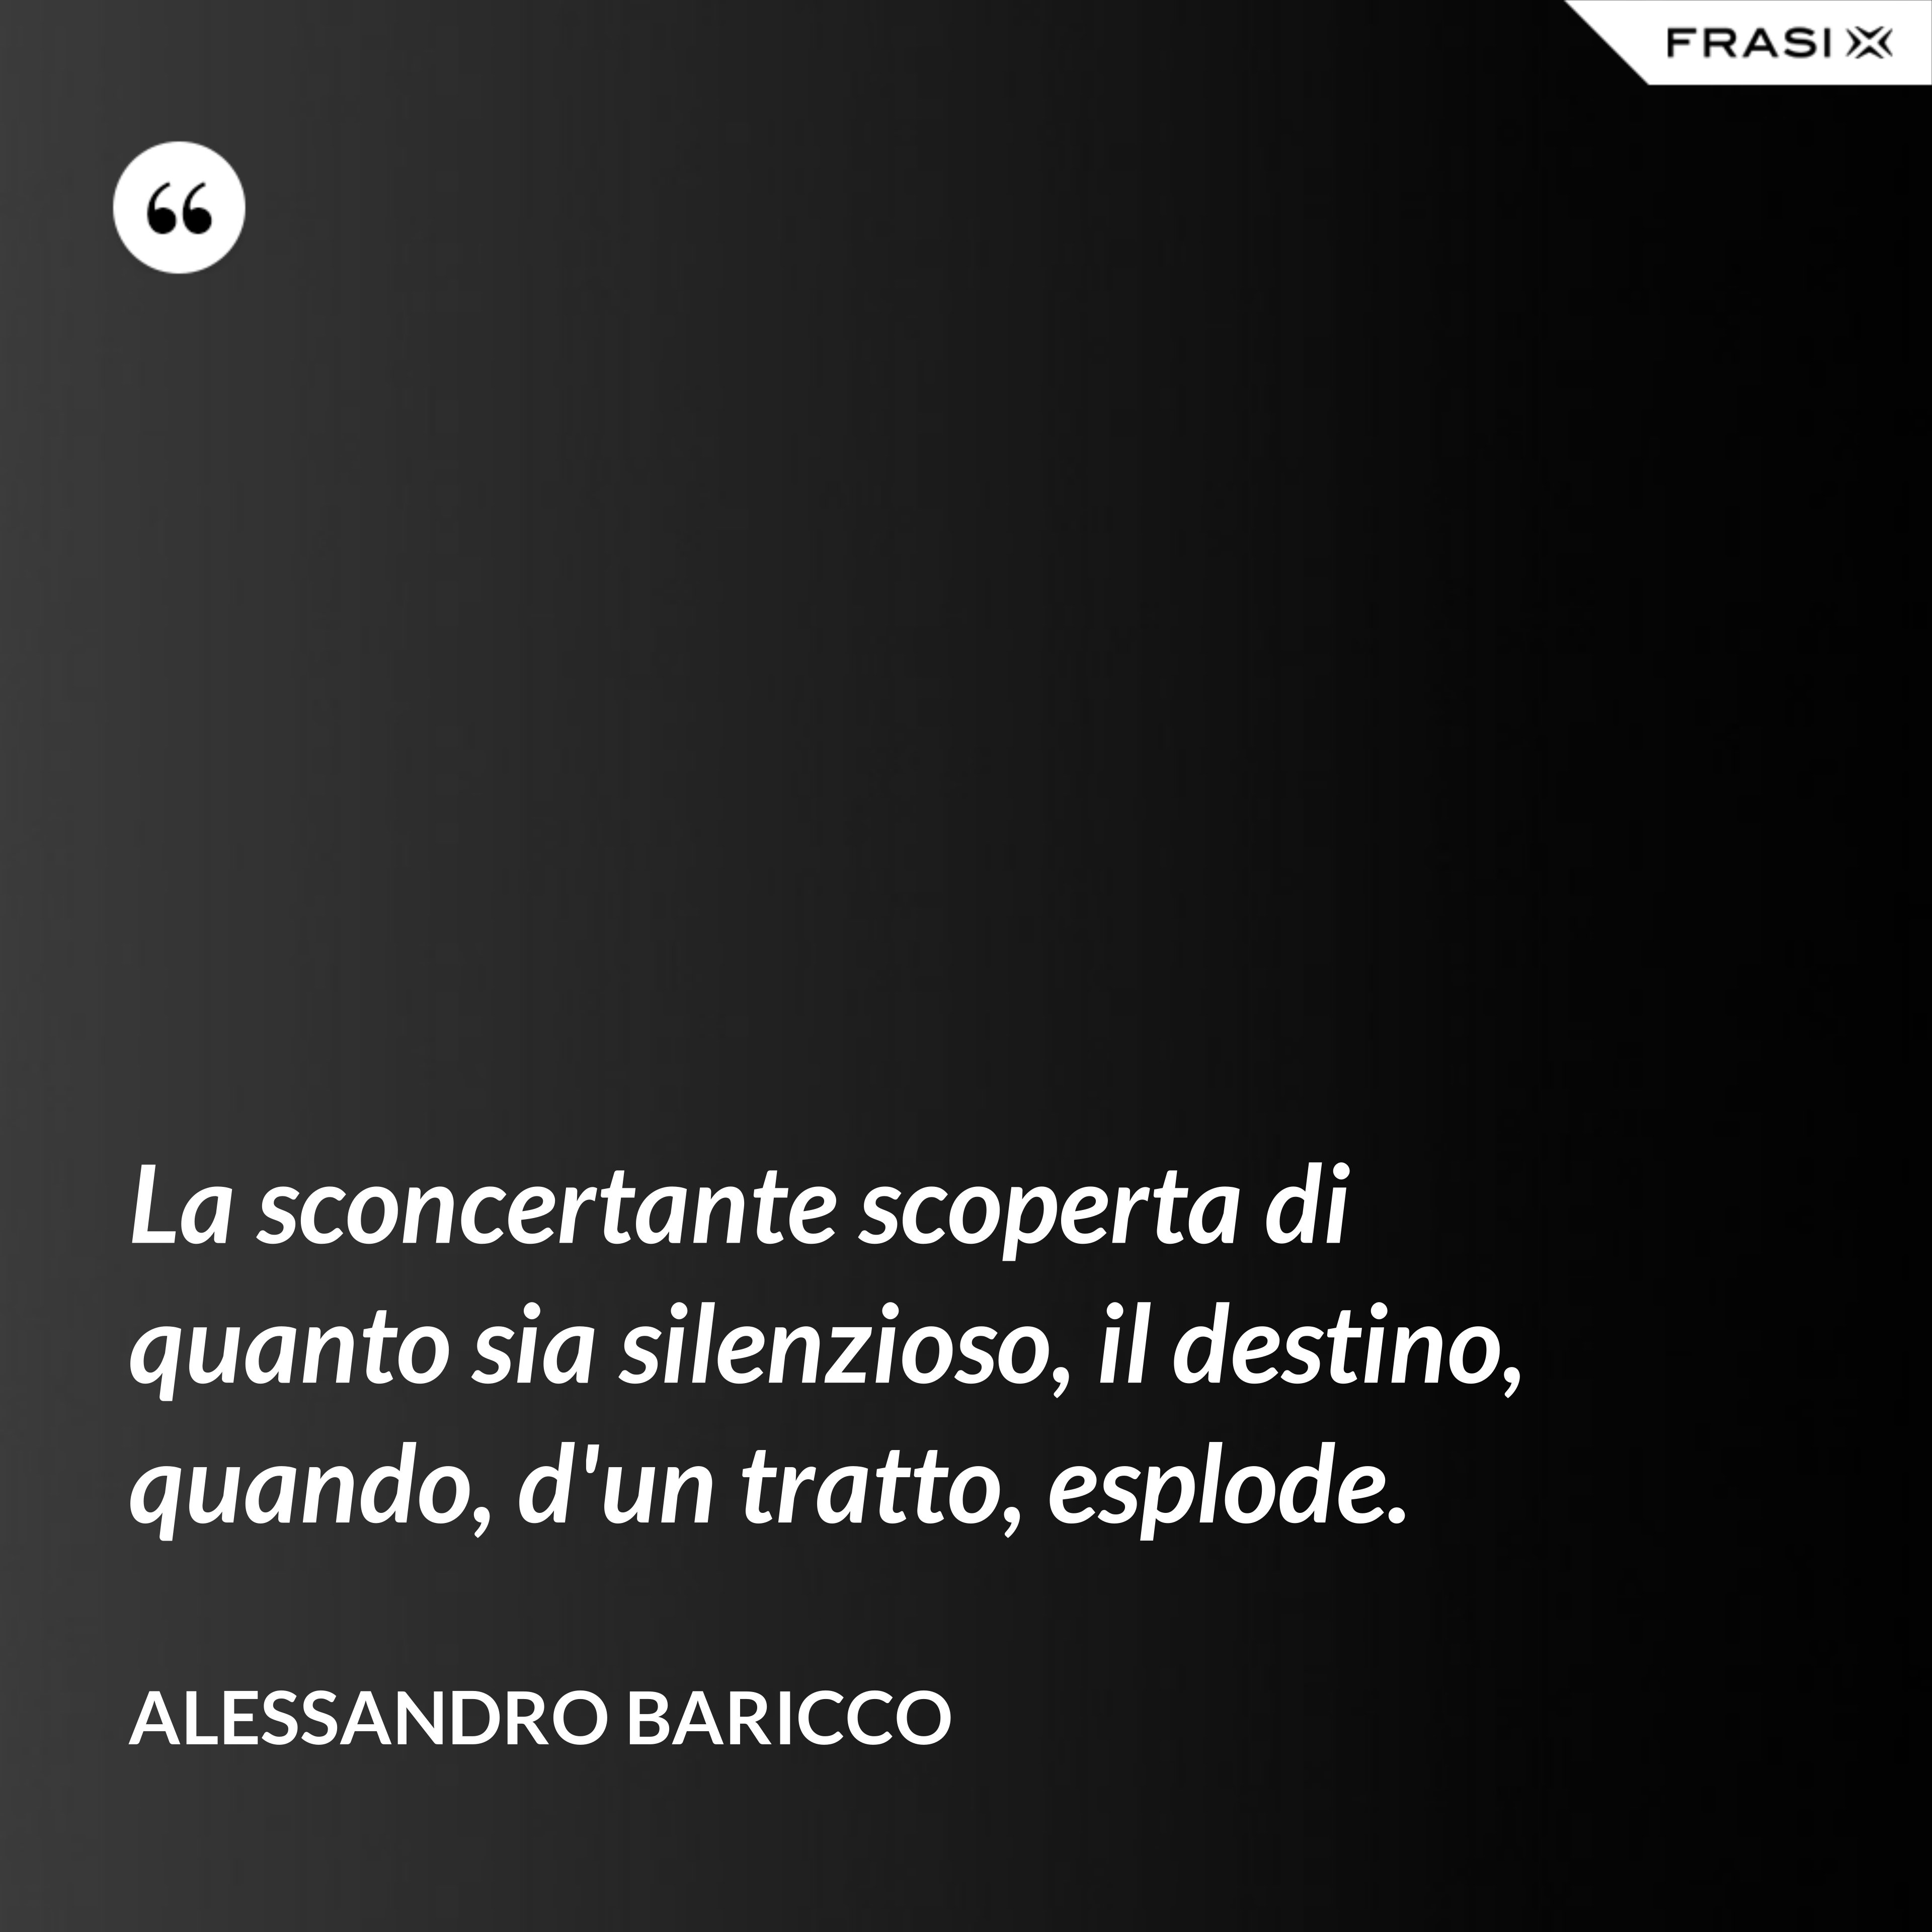 La sconcertante scoperta di quanto sia silenzioso, il destino, quando, d'un tratto, esplode. - Alessandro Baricco